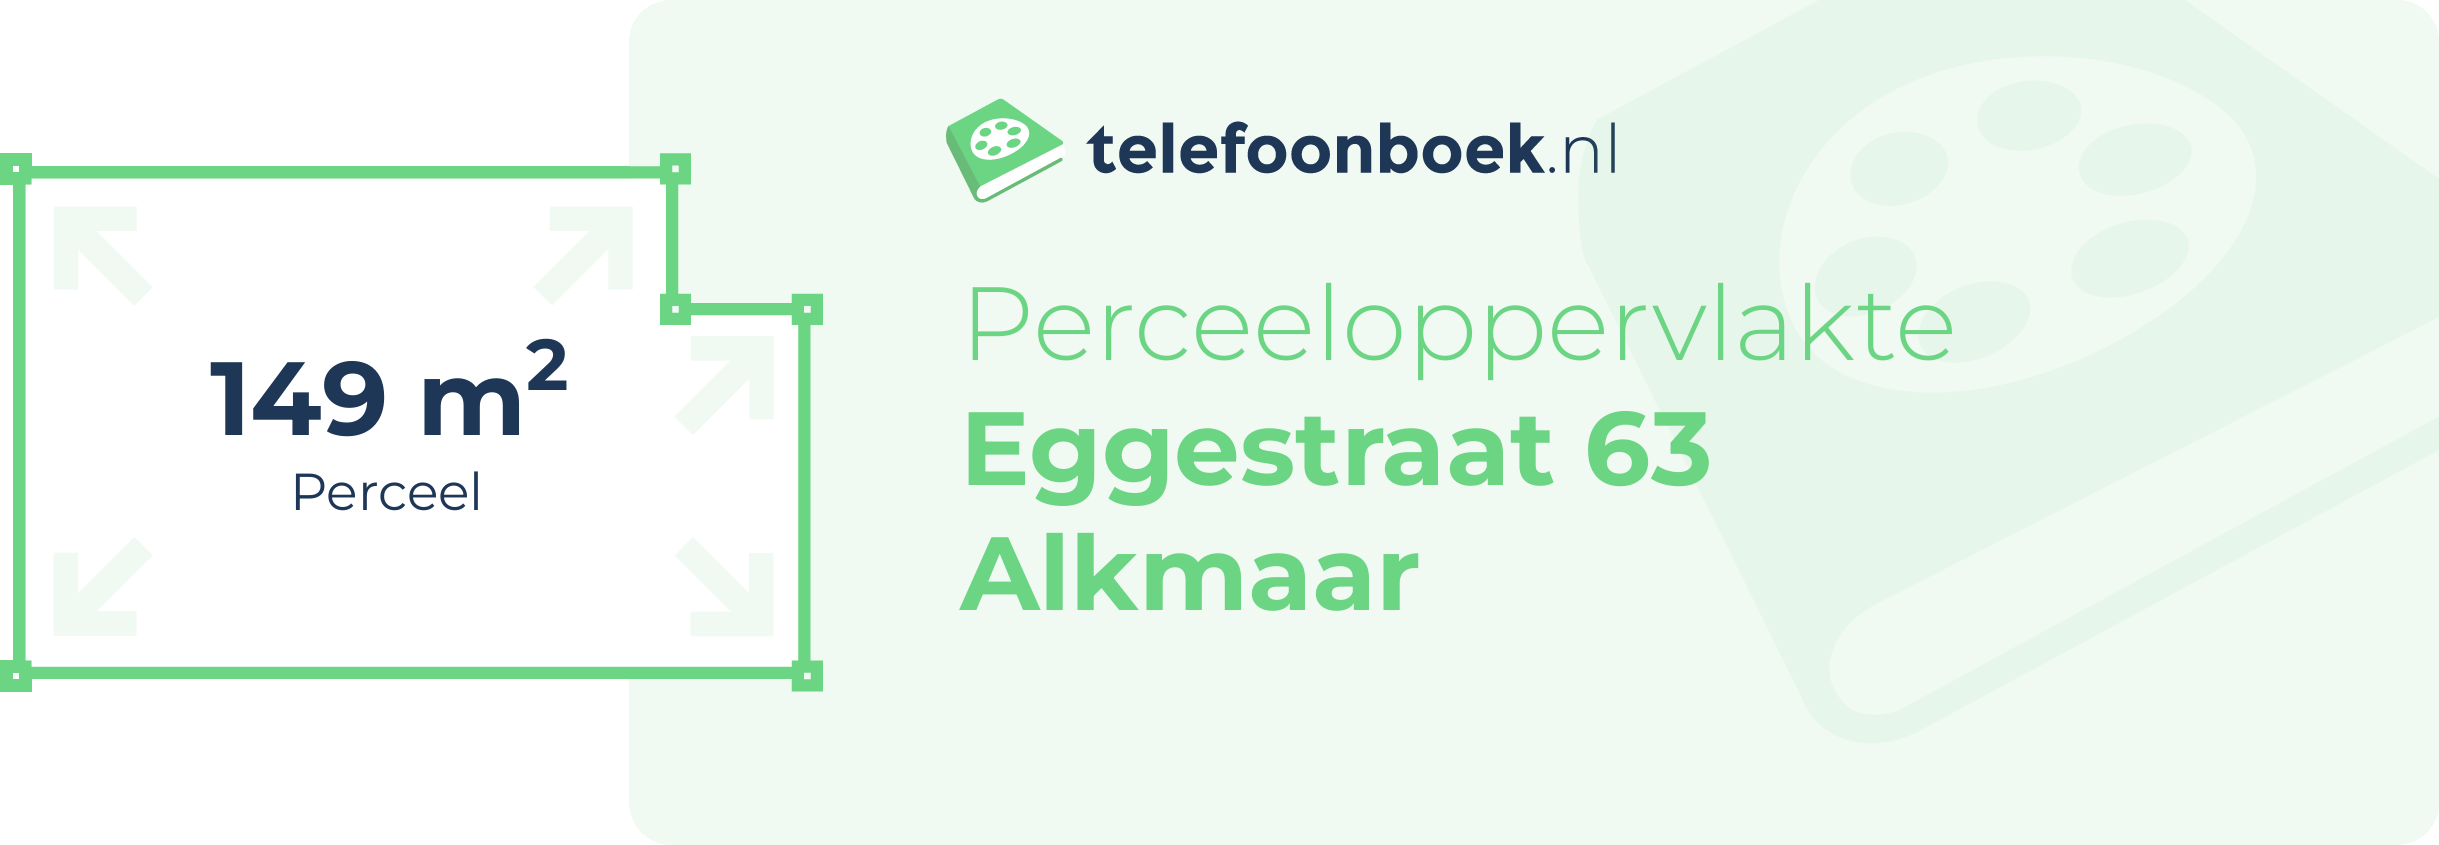 Perceeloppervlakte Eggestraat 63 Alkmaar